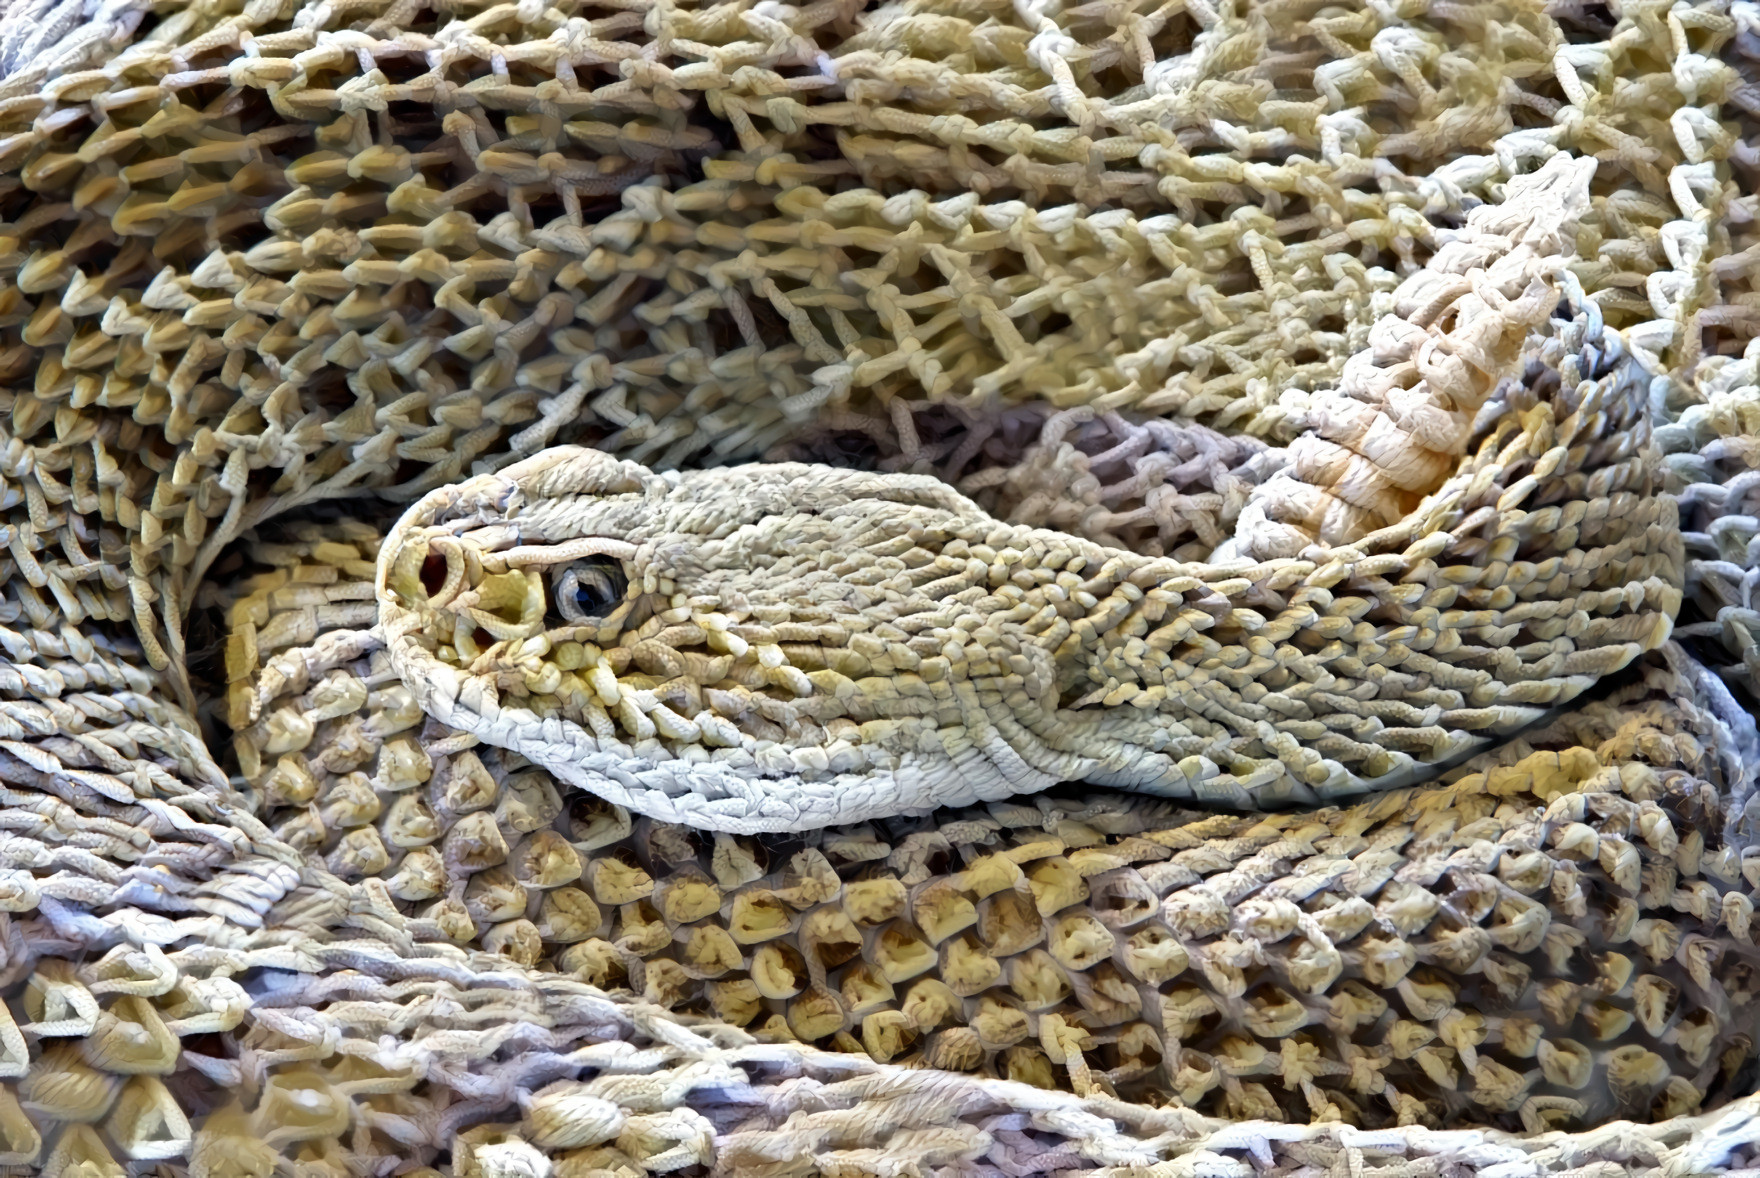 Snake 2: The Ropening III (source: pixabay) •